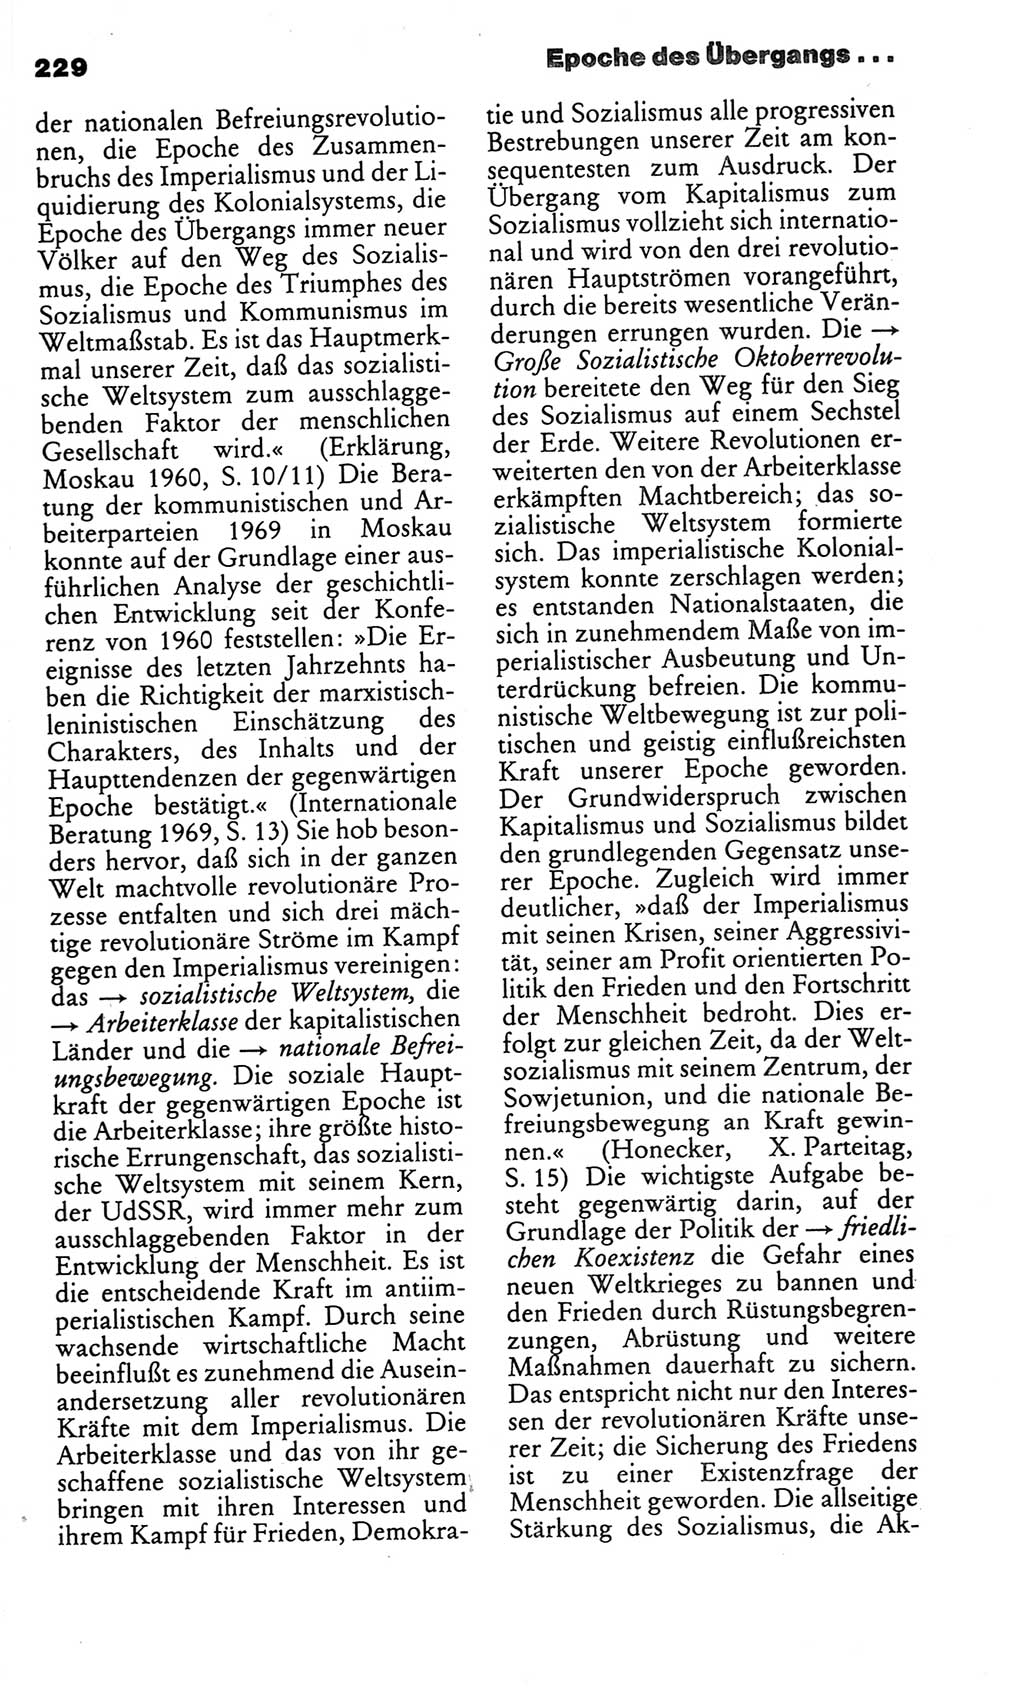 Kleines politisches Wörterbuch [Deutsche Demokratische Republik (DDR)] 1986, Seite 229 (Kl. pol. Wb. DDR 1986, S. 229)